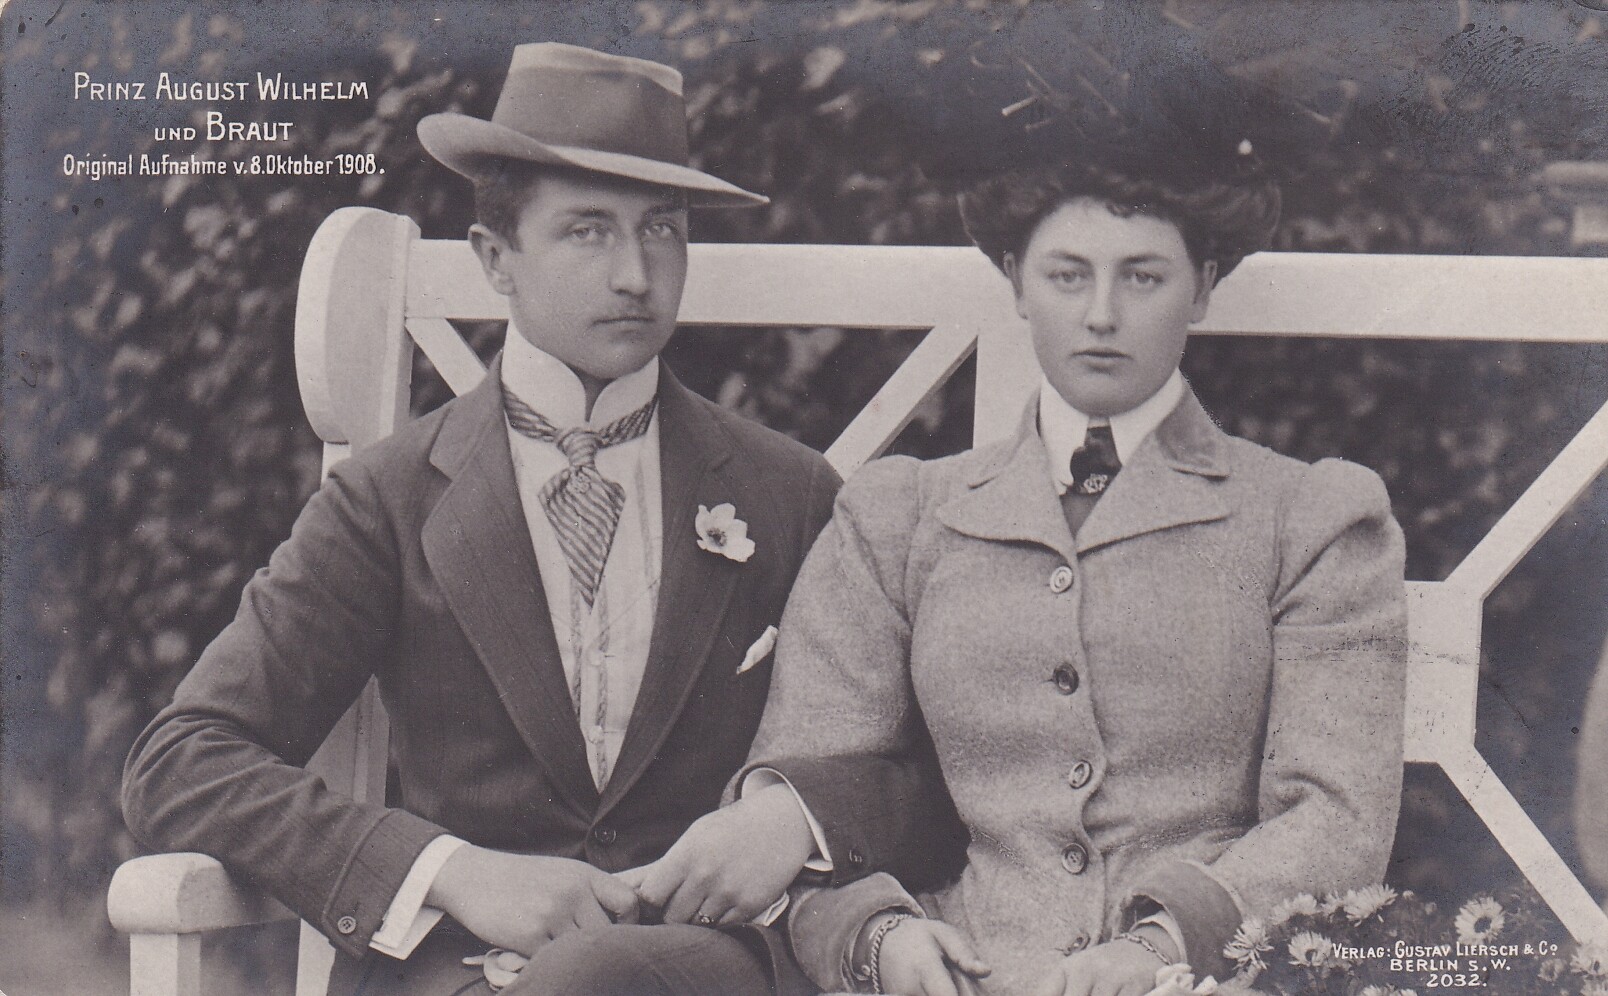 Bildpostkarte mit Foto des Prinzen August Wilhelm von Preußen (1887-1949) mit seiner Braut Alexandra Viktoria, 8.10.1908 (Schloß Wernigerode GmbH RR-F)